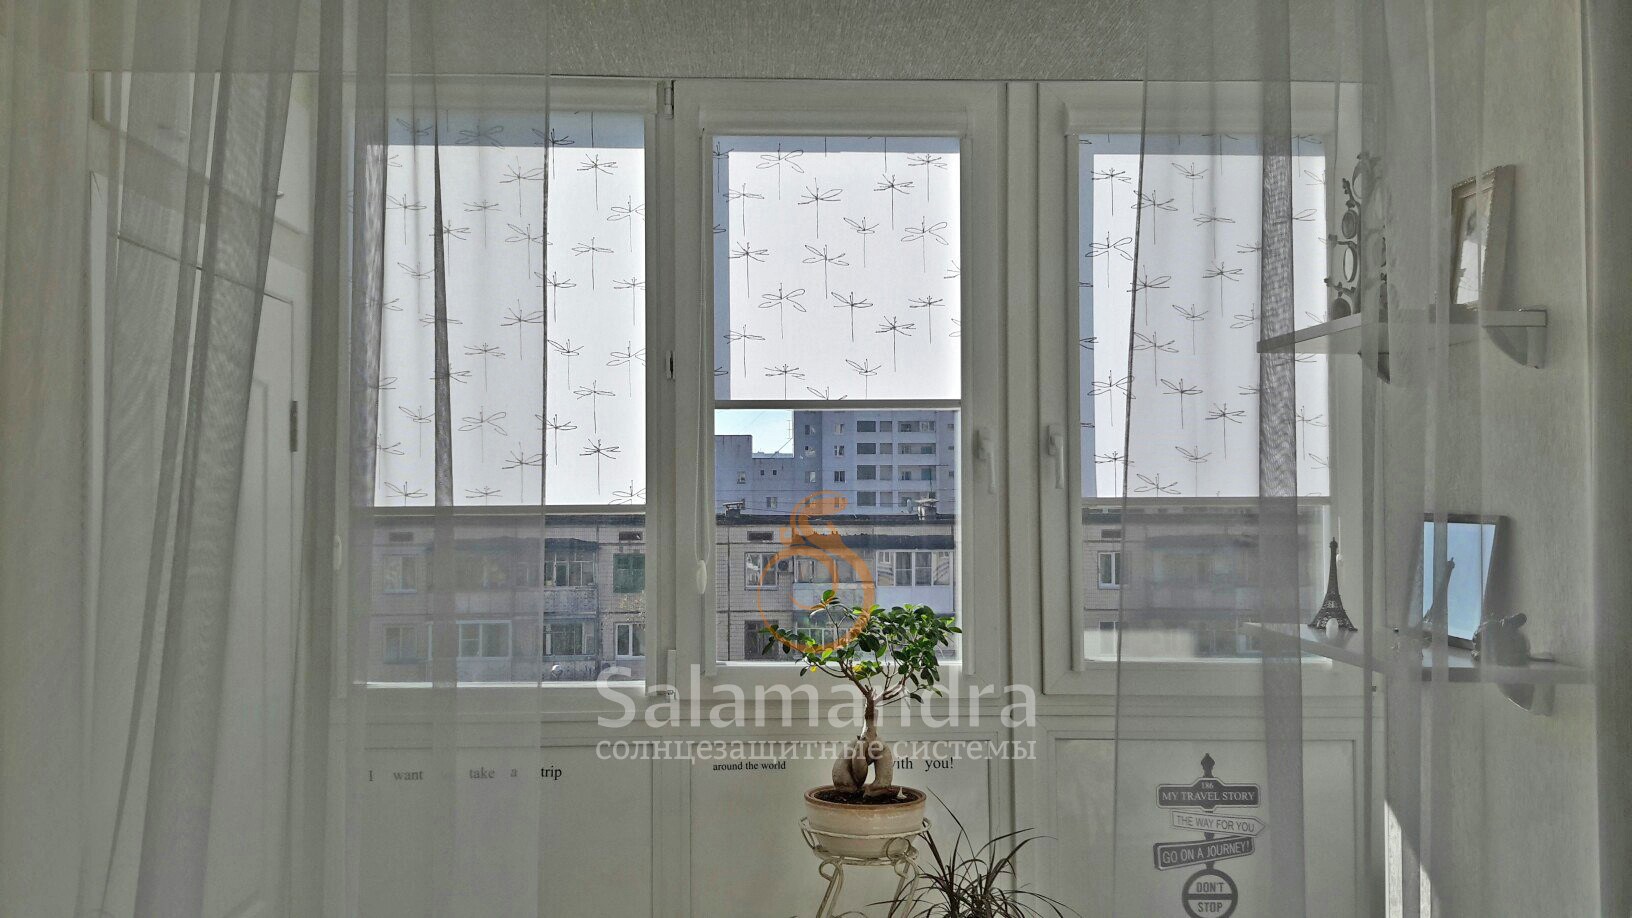 Рулонные шторы в коробе или кассетные шторы в Белгороде от компании SALAMANDRA - что это такое?